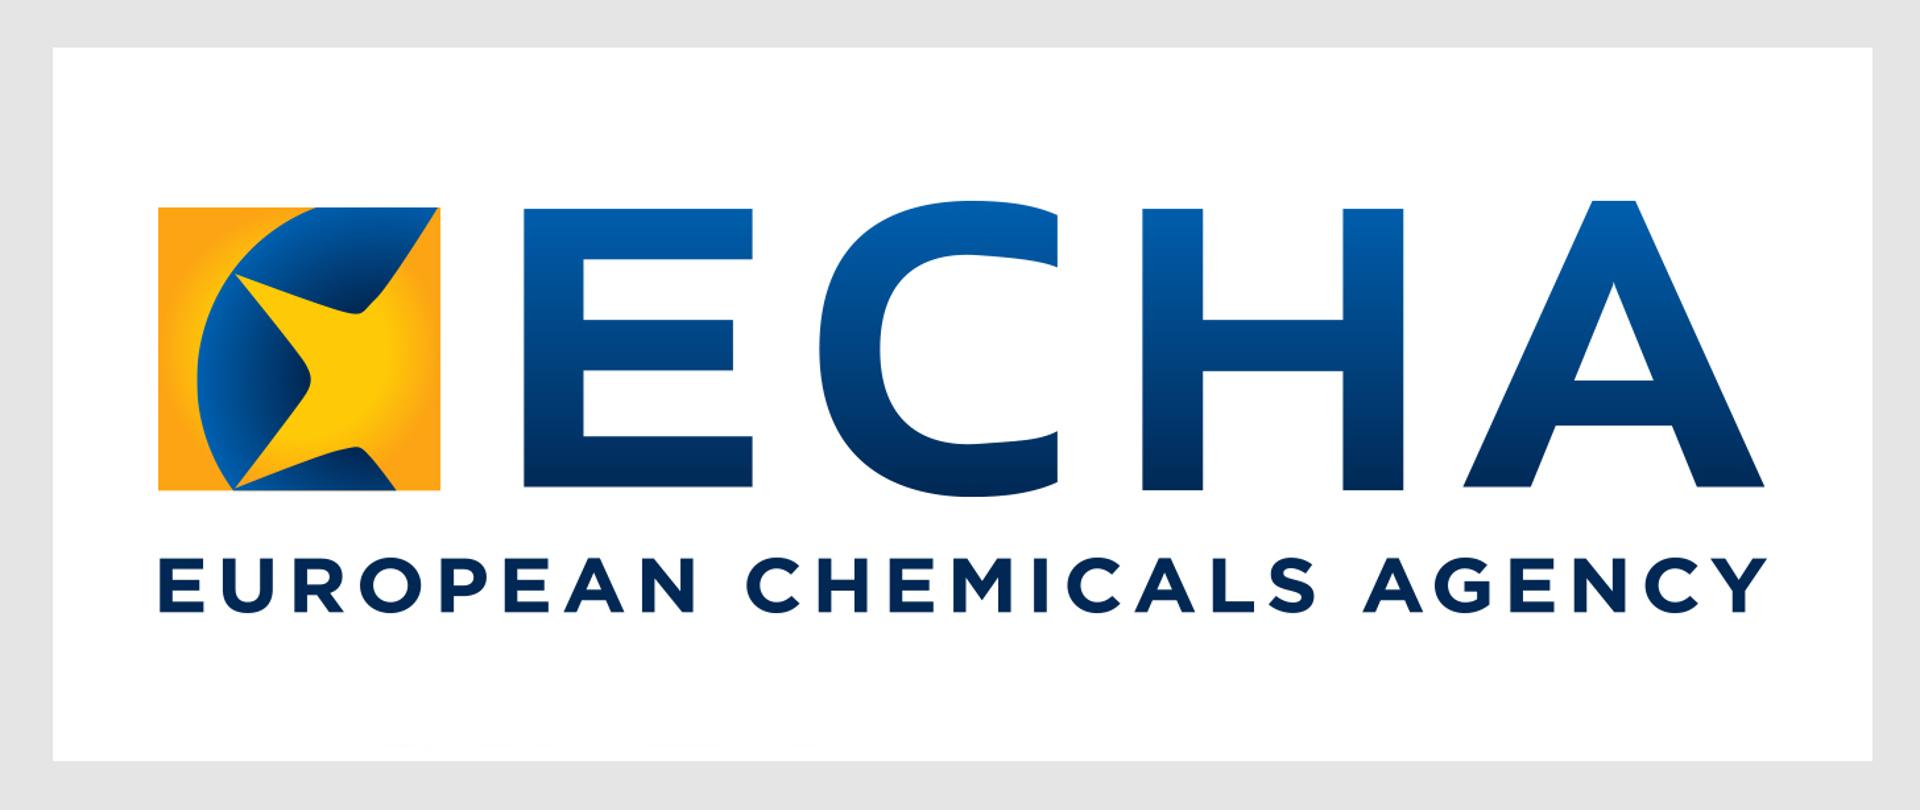 Konsultacje w sprawie trzech projektów opinii Komitetu ds. Analiz  Społeczno-Ekonomicznych (ECHA SEAC) - Biuro do spraw Substancji Chemicznych  - Portal Gov.pl